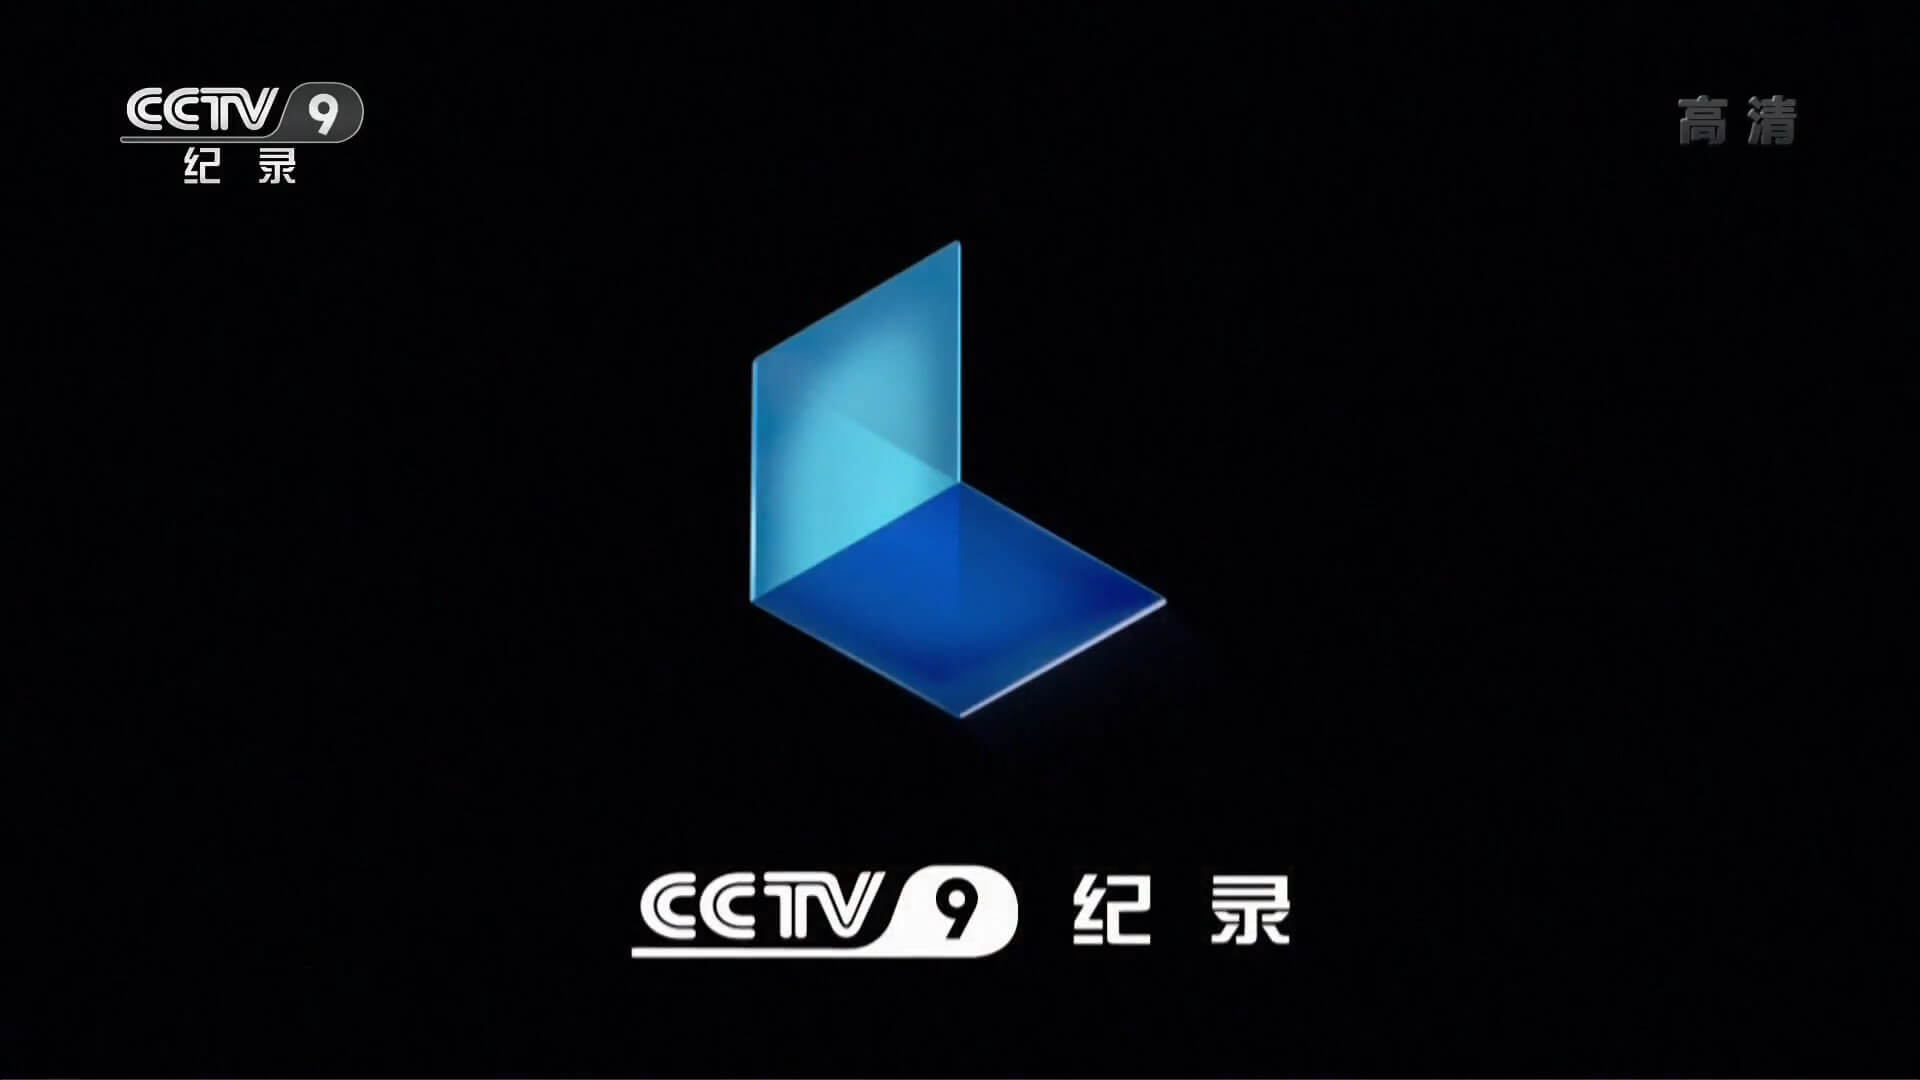 CCTV-9紀錄